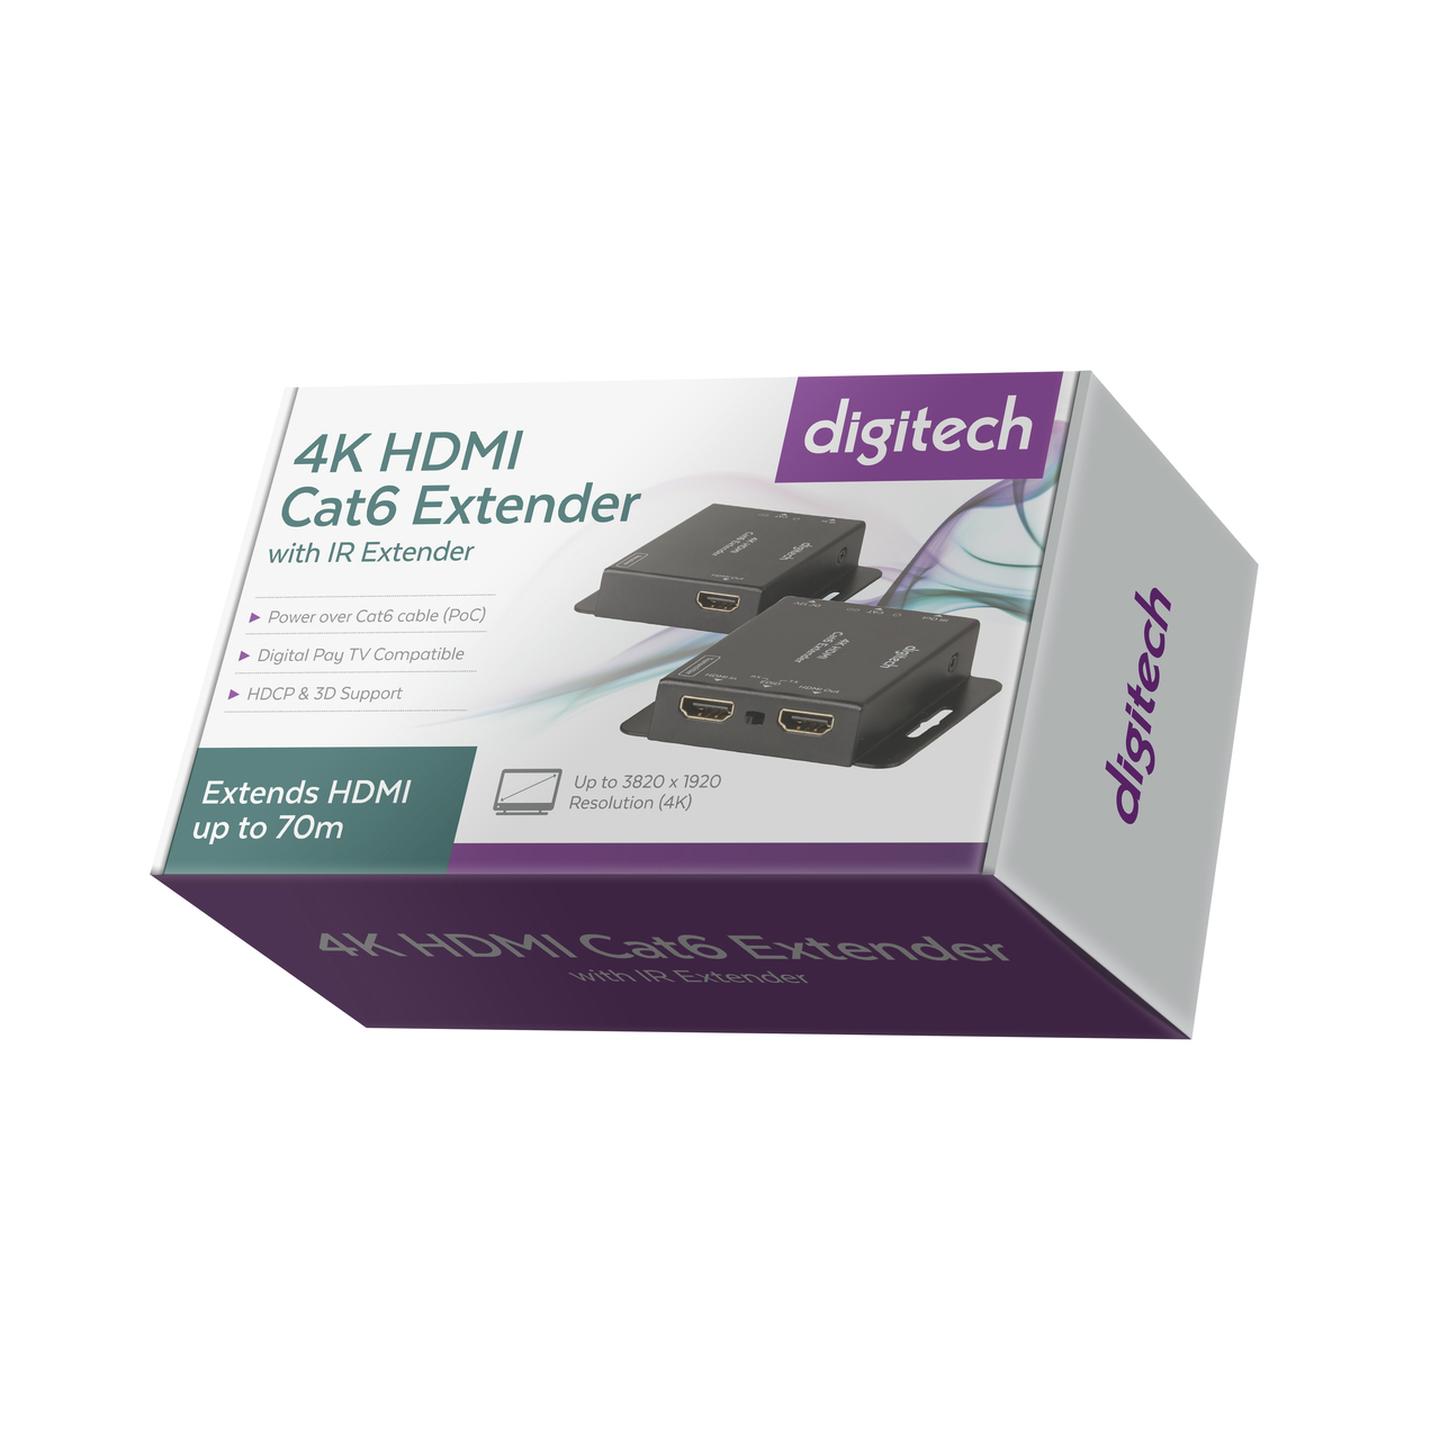 Digitech 4K HDMI Cat6 Extender with IR Extender